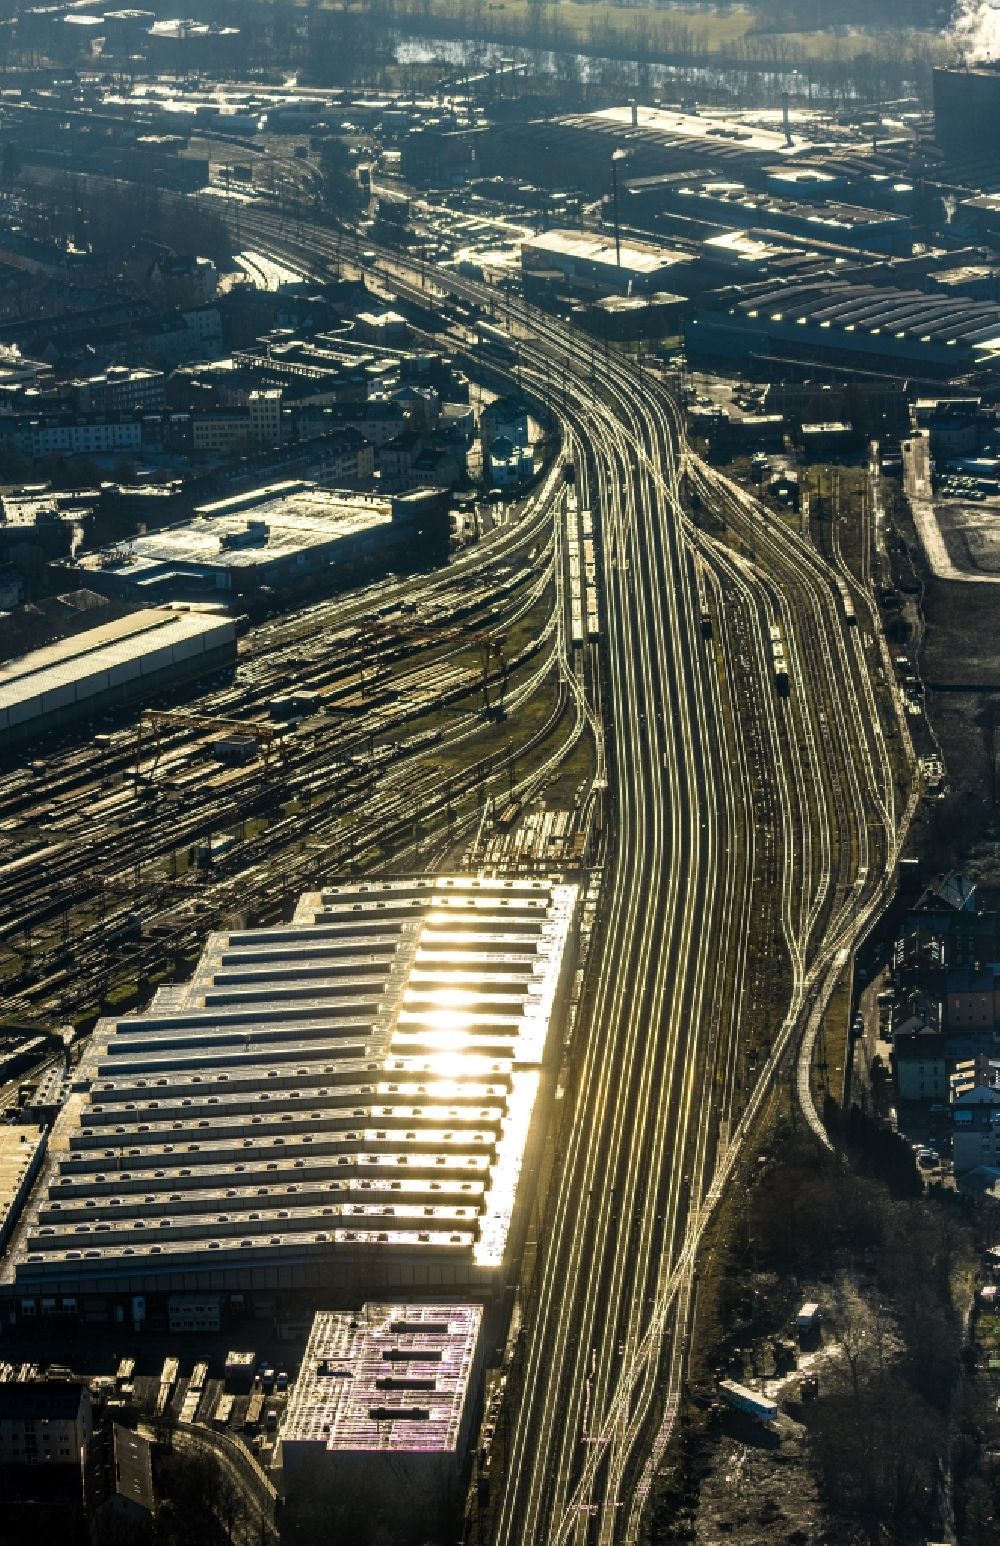 Witten von oben - Rangierbahnhof und Güterbahnhof der Deutschen Bahn in Witten im Bundesland Nordrhein-Westfalen, Deutschland